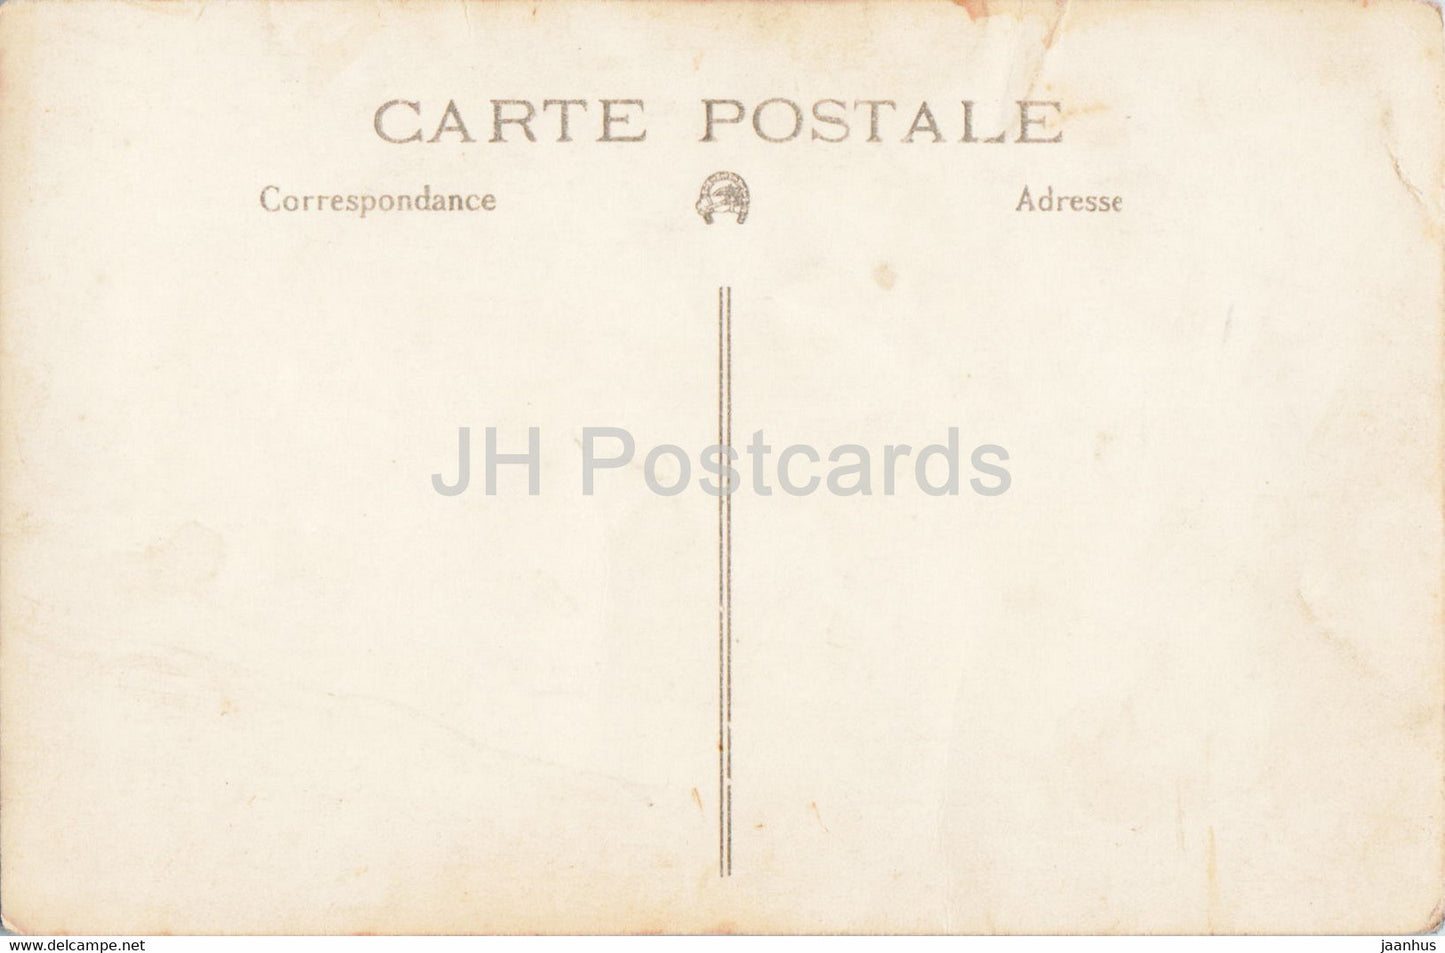 Frau und Kind - alte Postkarte - Frankreich - gebraucht